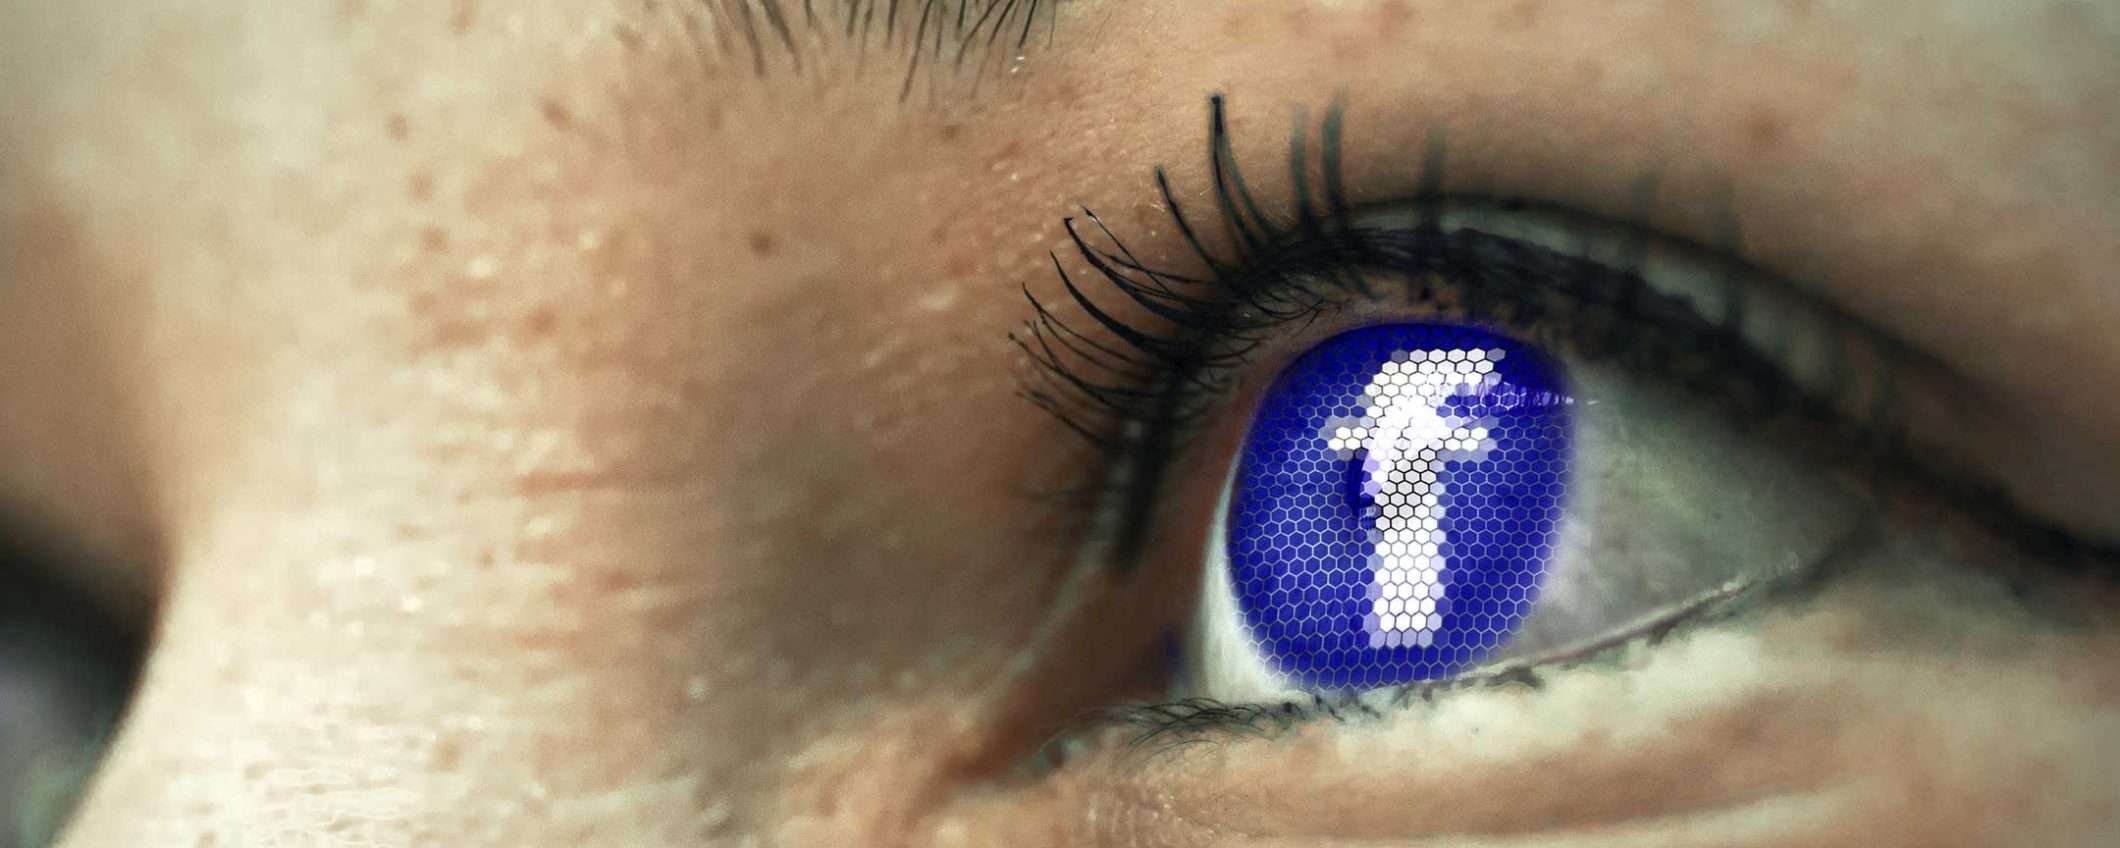 Facebook e Instagram, il falso in fuorigioco